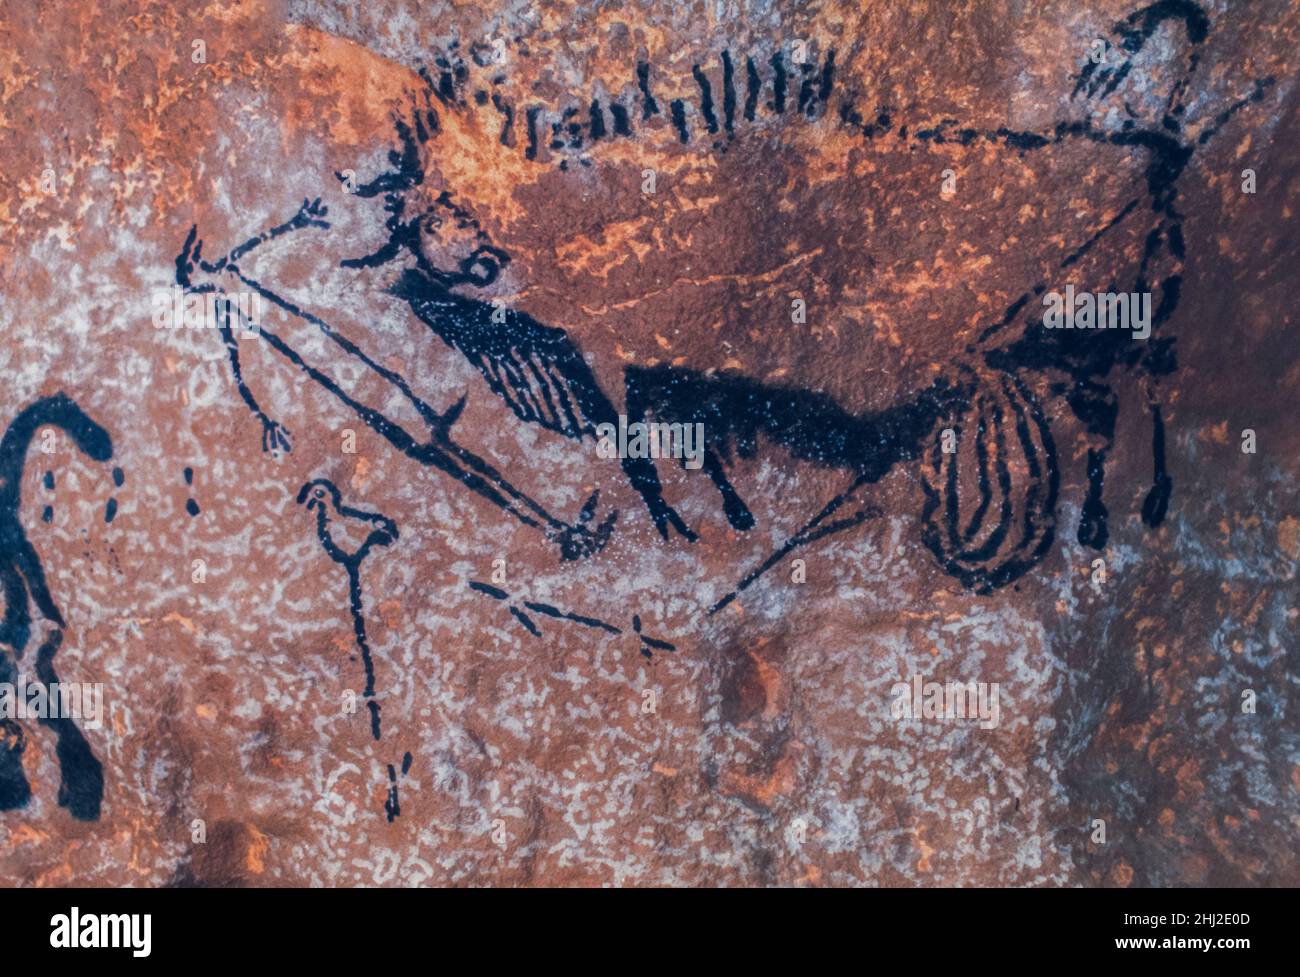 Steinzeitliche Höhlenmalereien von Jägern mit Speeren und Auroch, jetzt ausgestorbener Wildbulle, Lascaux Caves, Perigord, Montignac, Dordogne, Frankreich Stockfoto